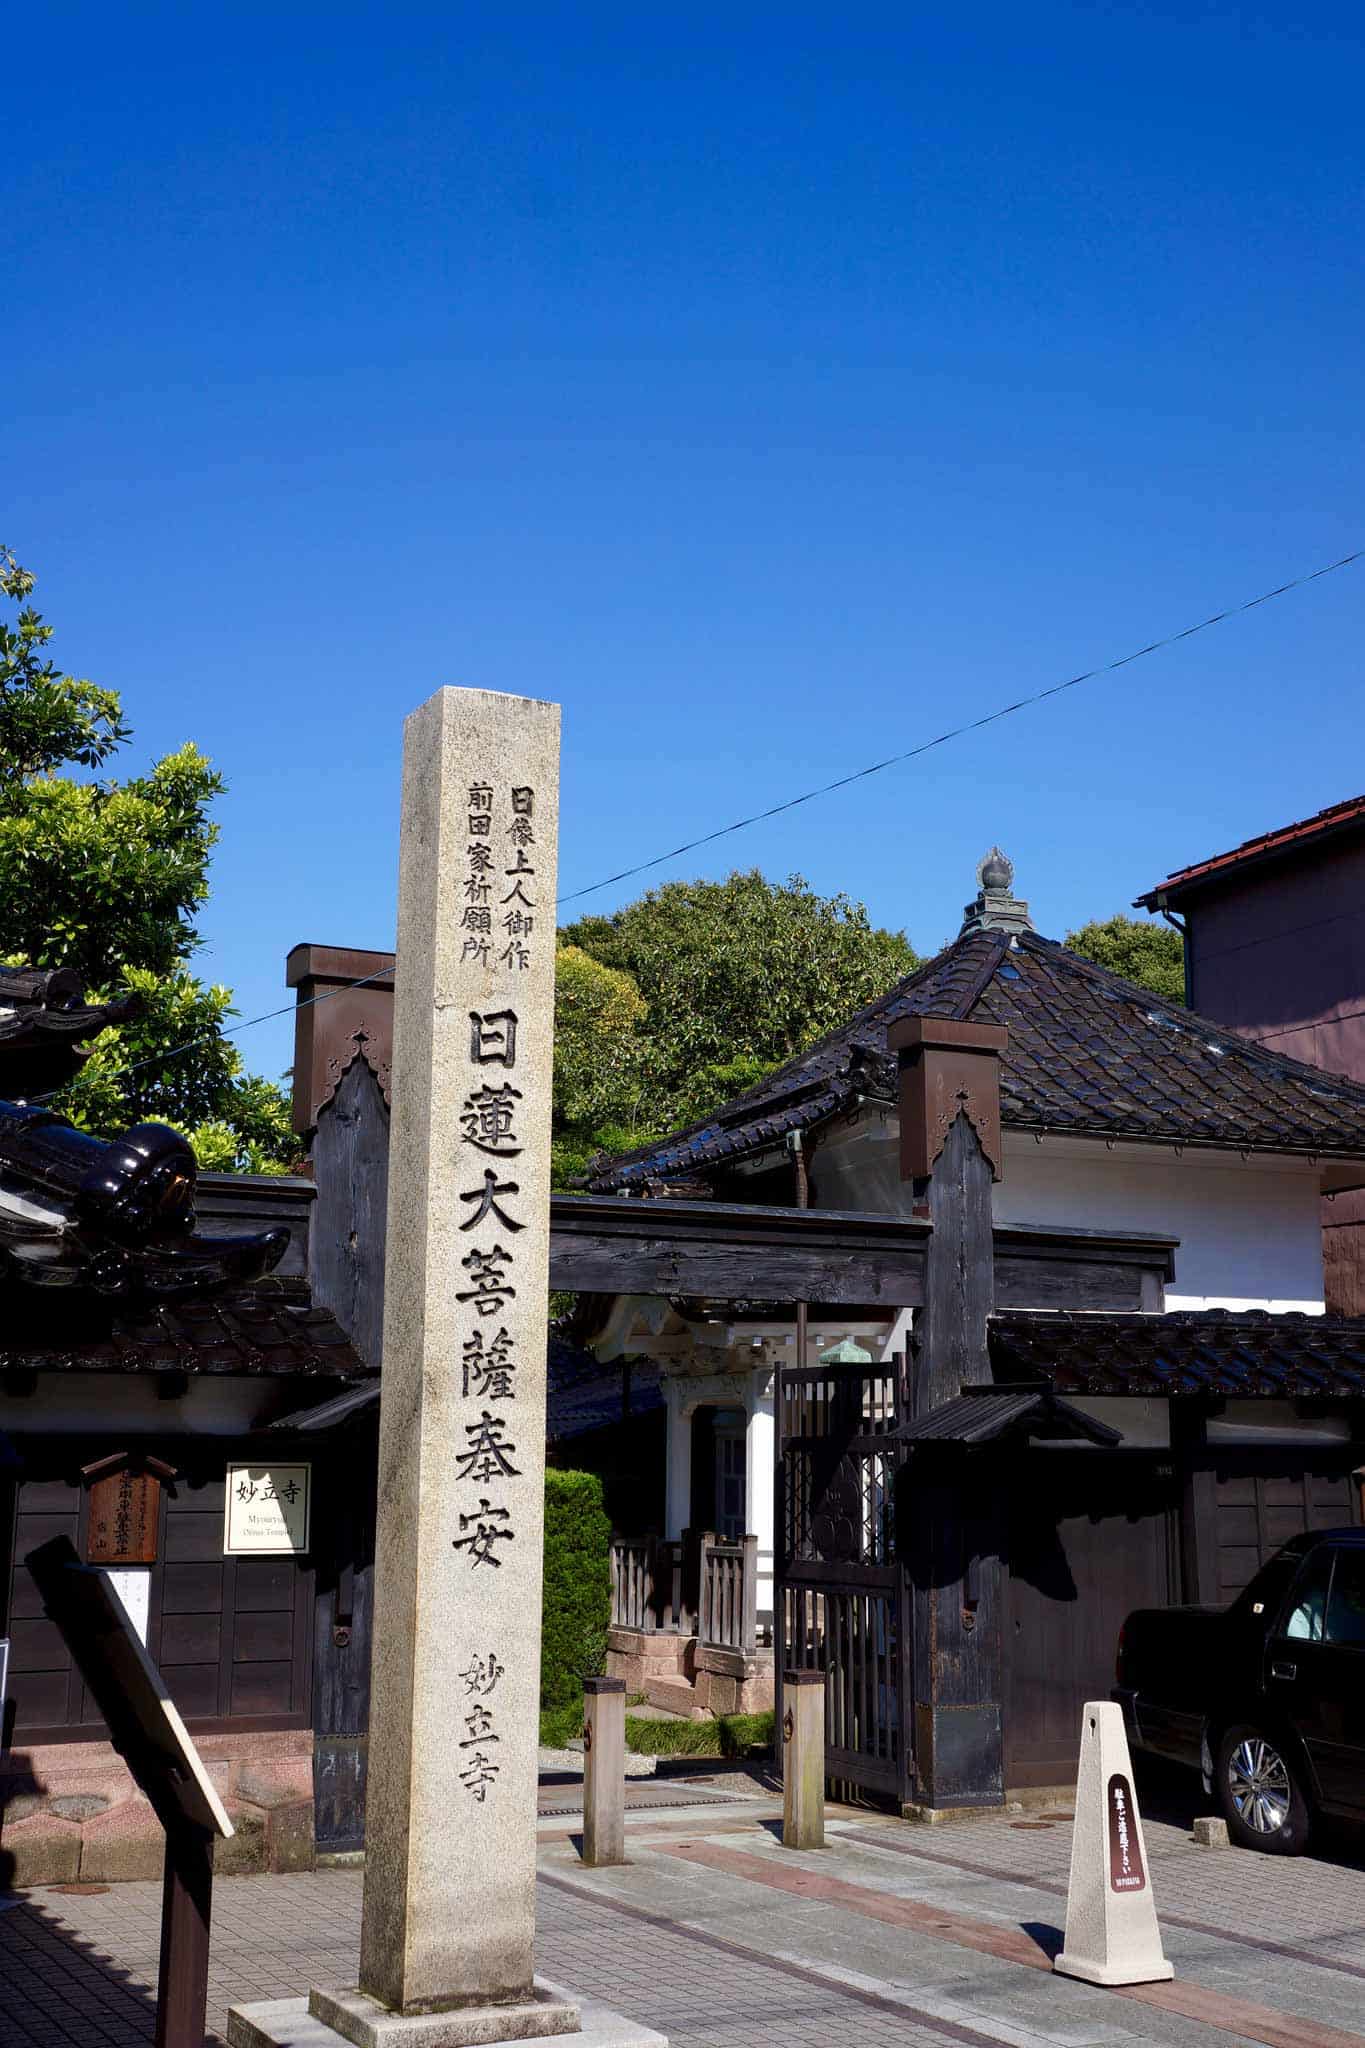 Eingang des Myoryuji Ninja Tempels